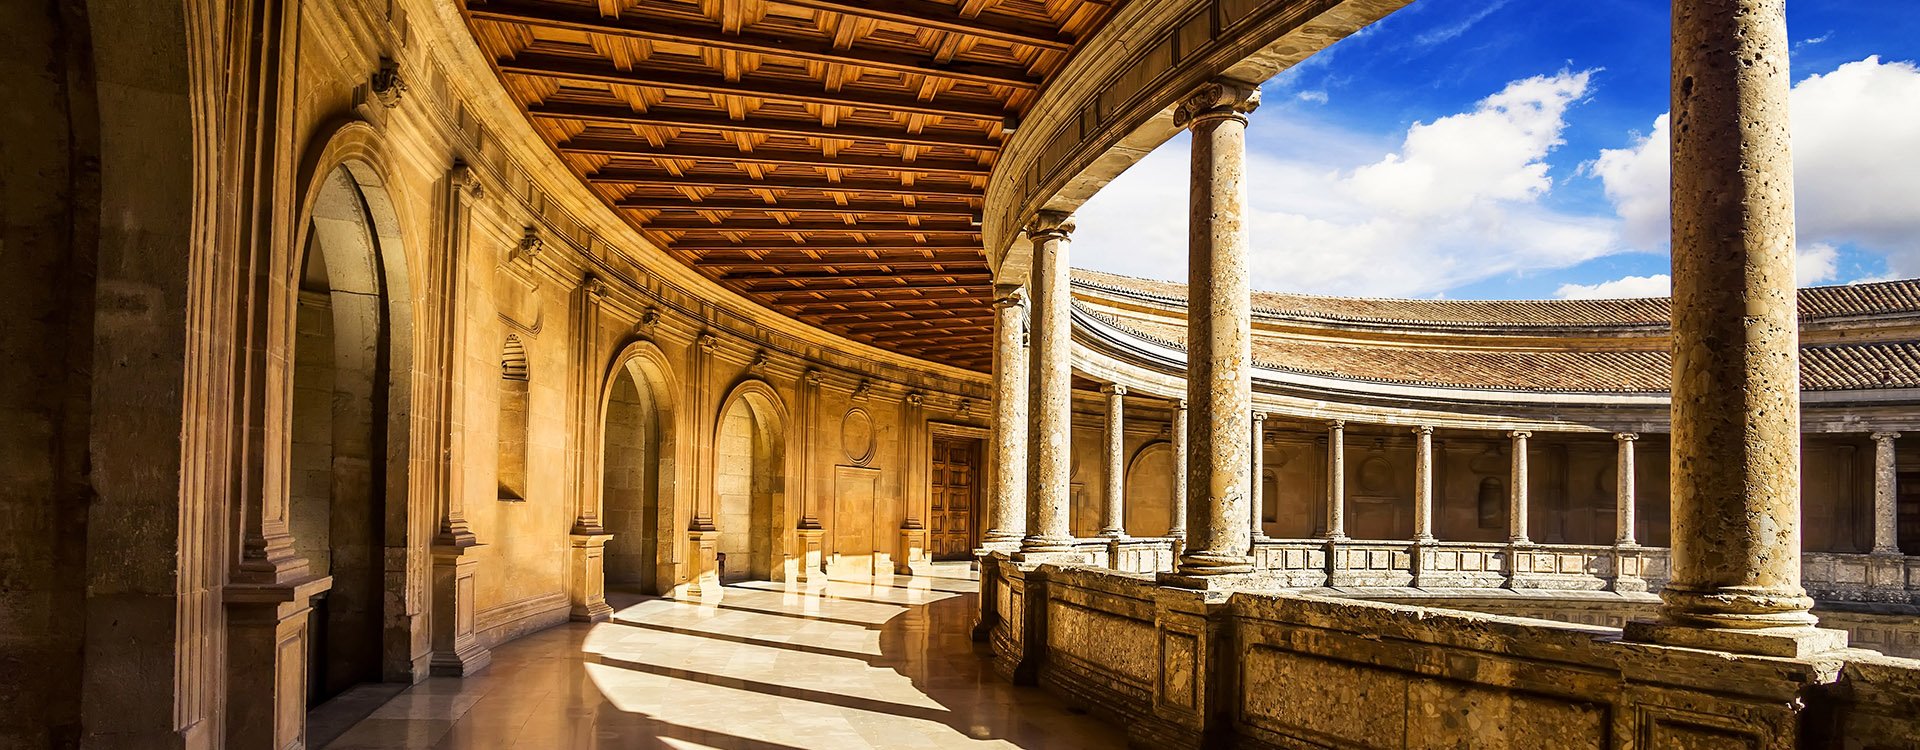 Courtyard of the Palacio de Carlos V in La Alhambra, Granada, Spain